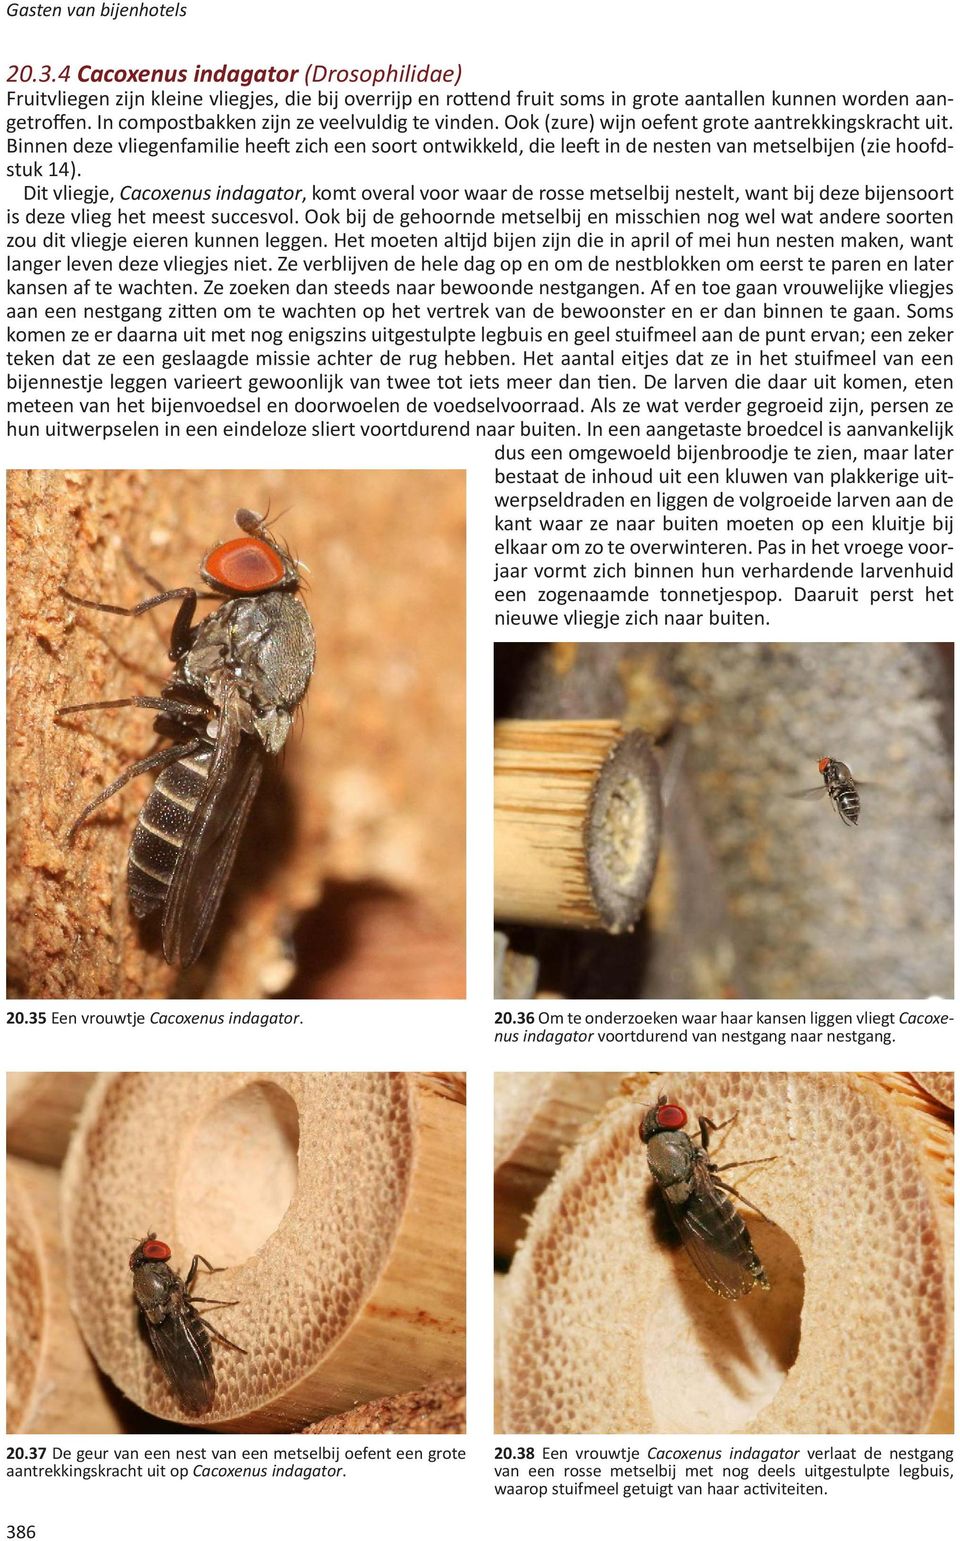 Binnen deze vliegenfamilie heeft zich een soort ontwikkeld, die leeft in de nesten van metselbijen (zie hoofdstuk 14).